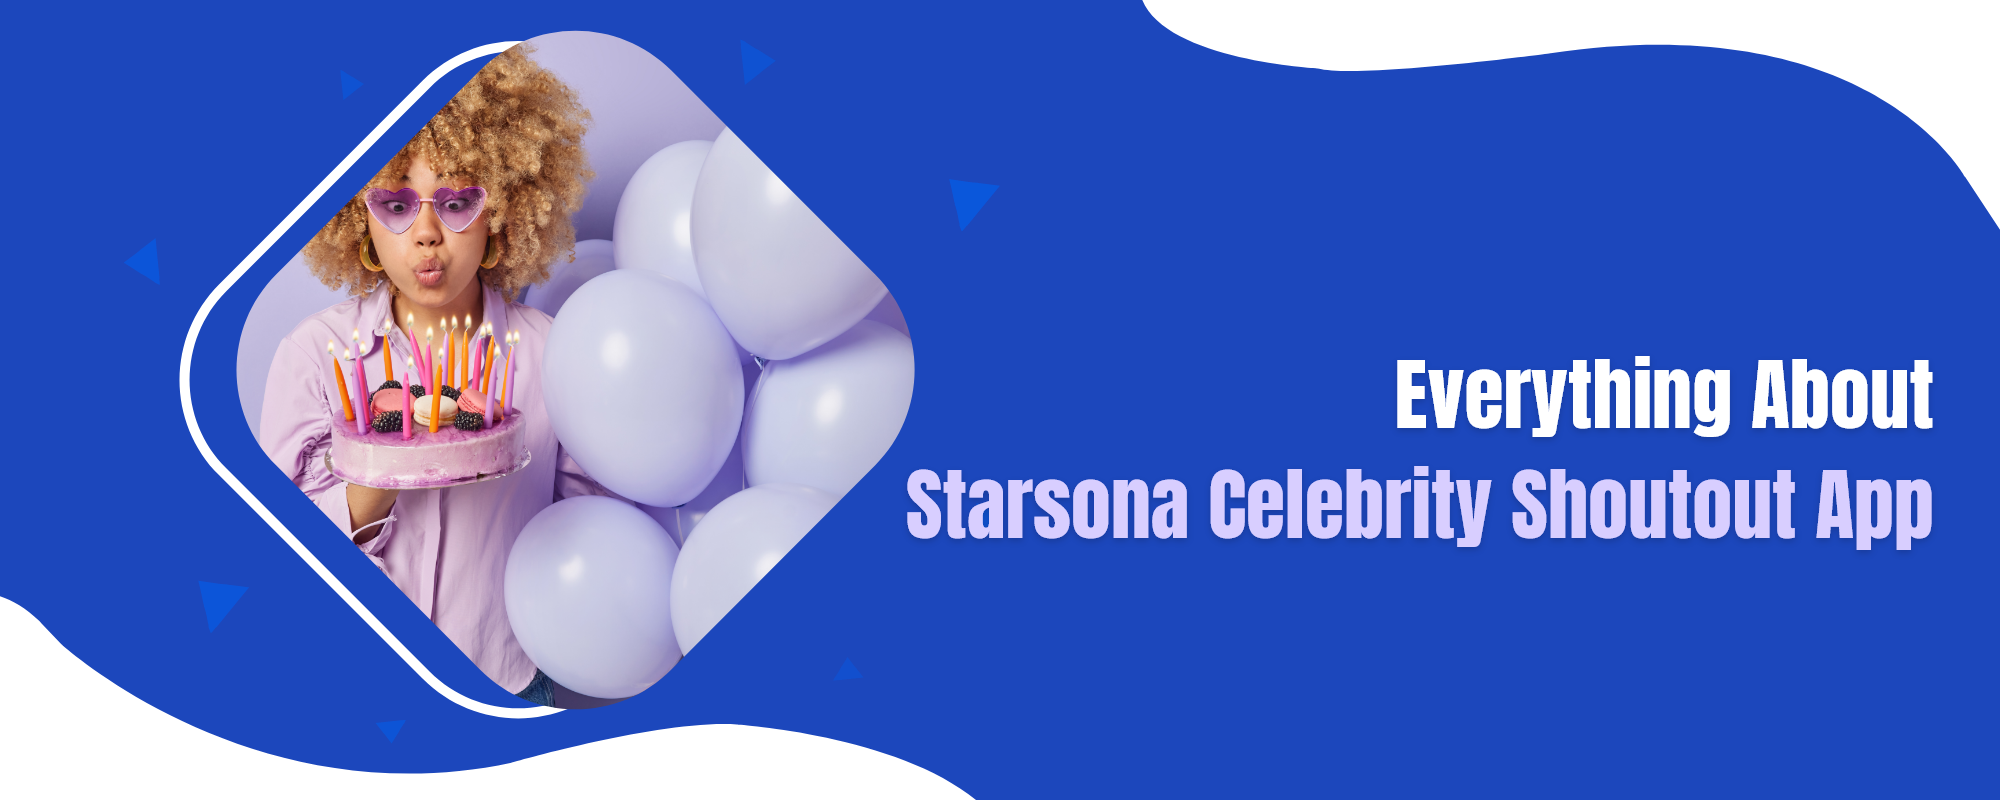 Starsona celebrity shoutout app